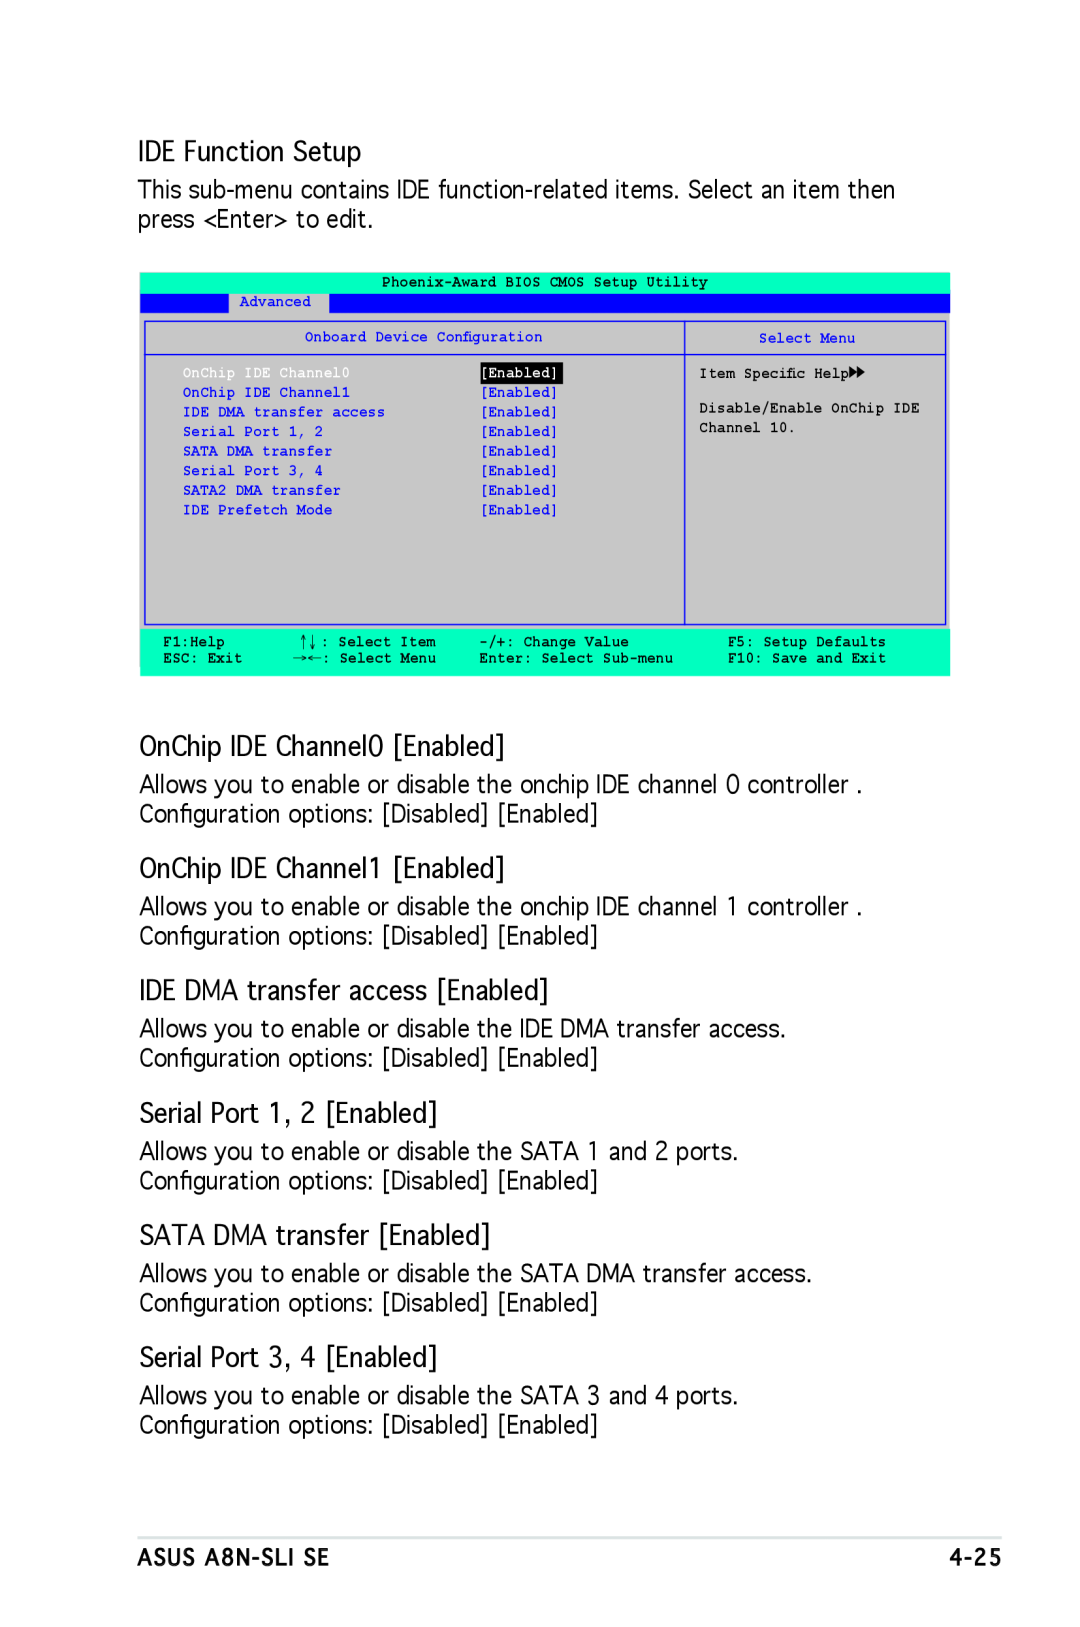 Asus A8N-SLI SE IDE Function Setup, OnChip IDE Channel0 Enabled, OnChip IDE Channel1 Enabled, Serial Port 1, 2 Enabled 